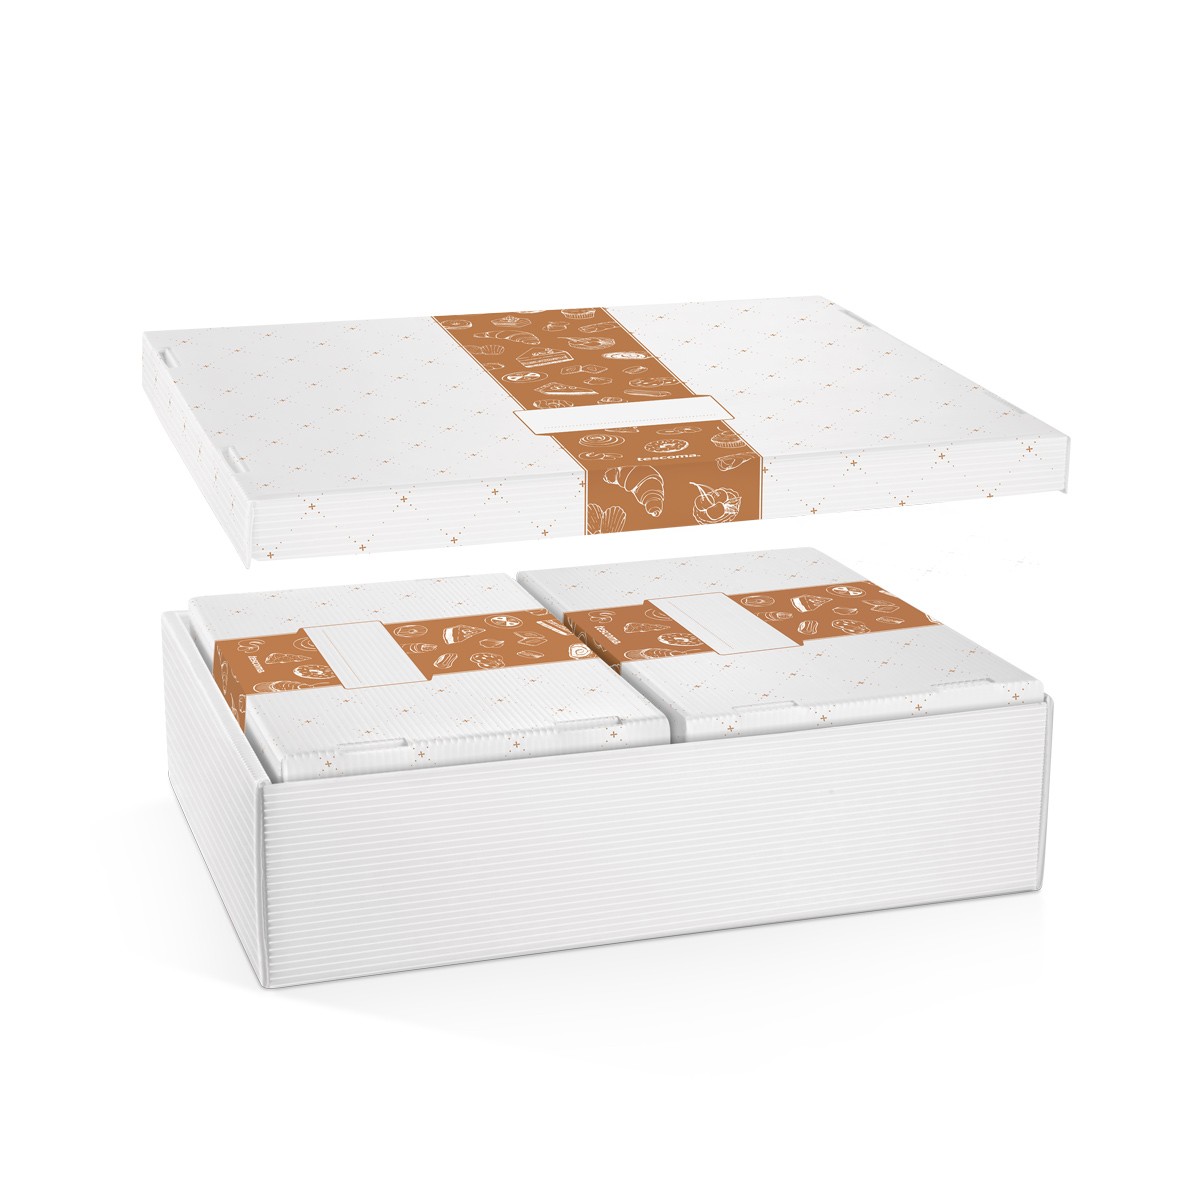 Krabice na cukroví a lahůdky DELÍCIA, 28 x 18 cm